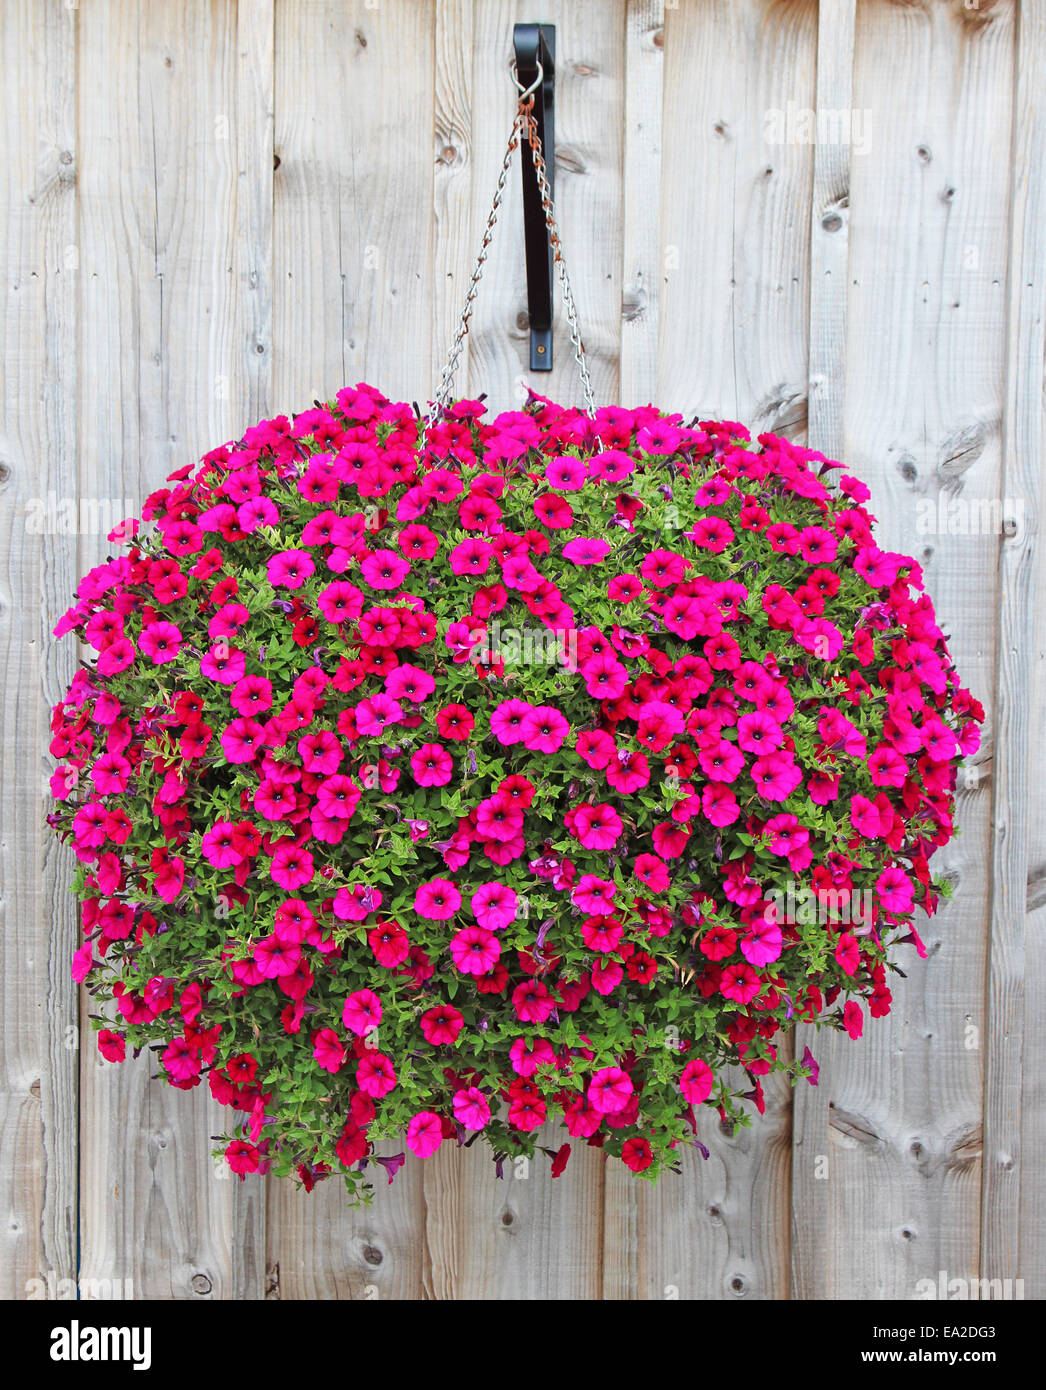 A Round Hanging Basket of Dark Pink Petunias Stock Photo